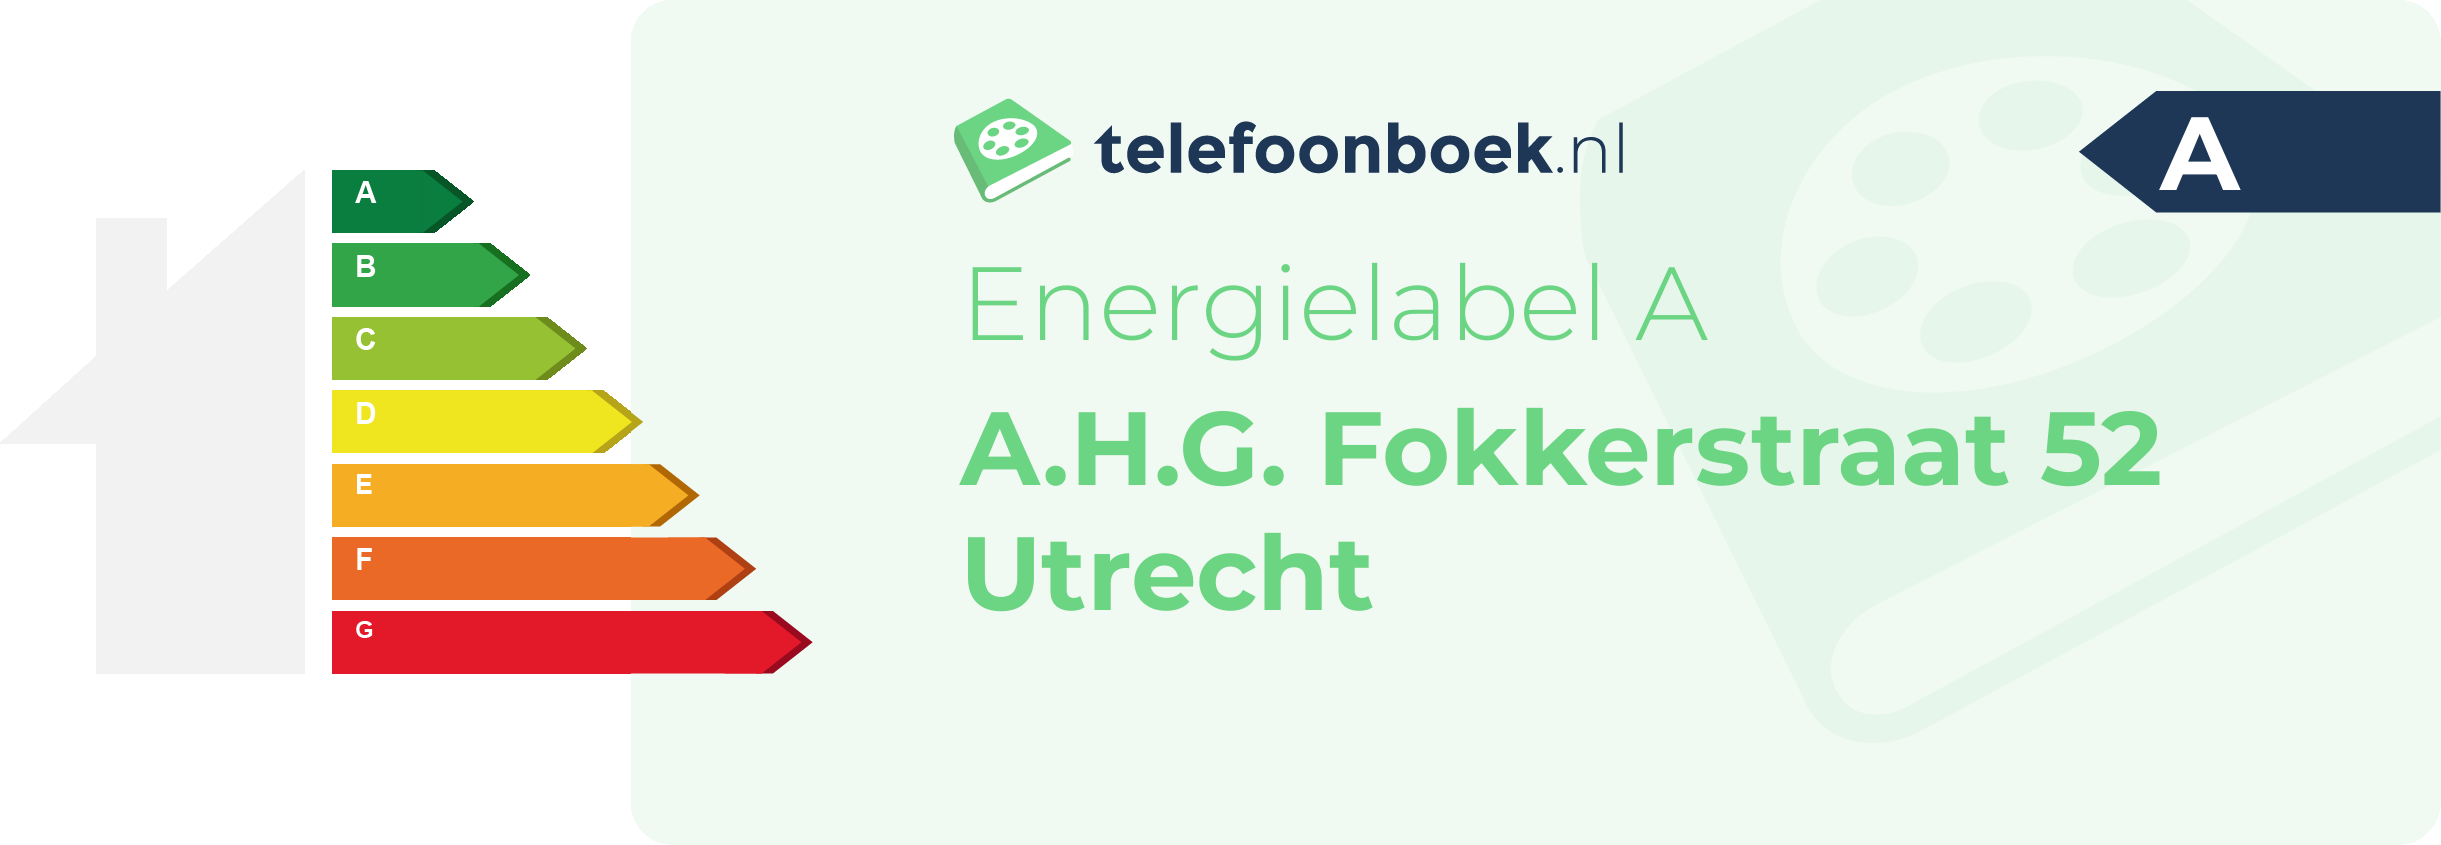 Energielabel A.H.G. Fokkerstraat 52 Utrecht